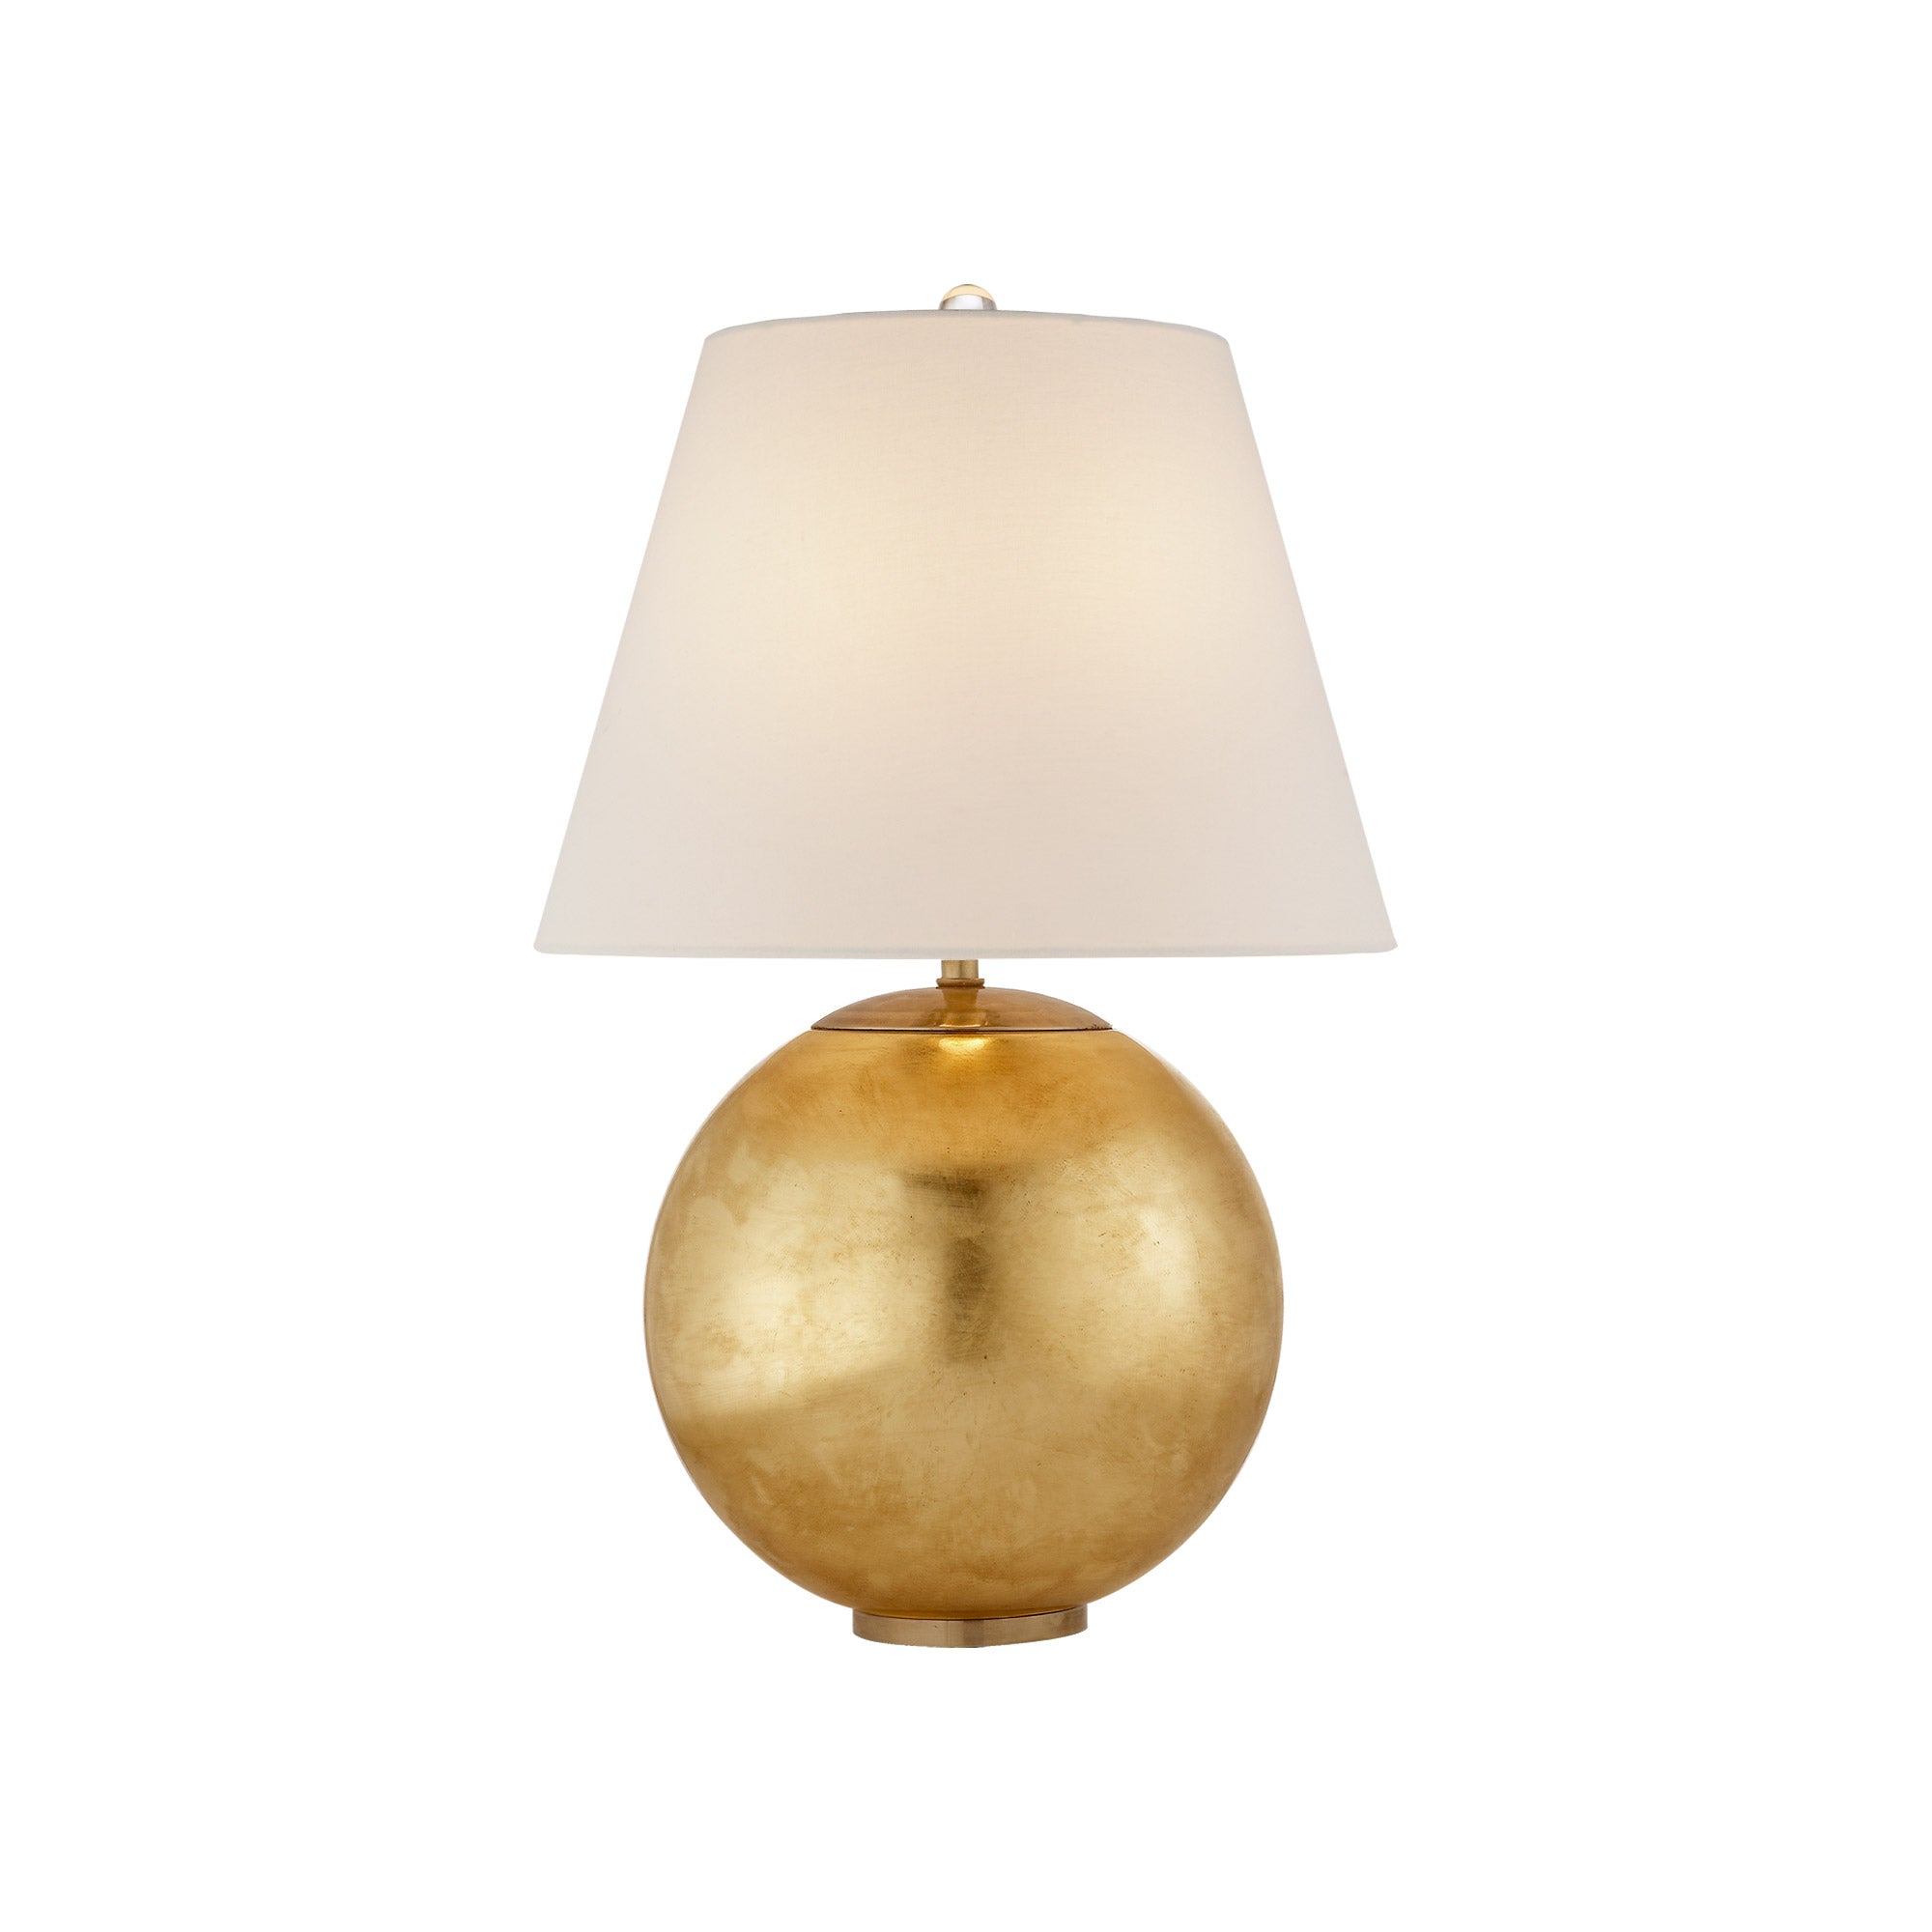 AERIN Morton Table Lamp